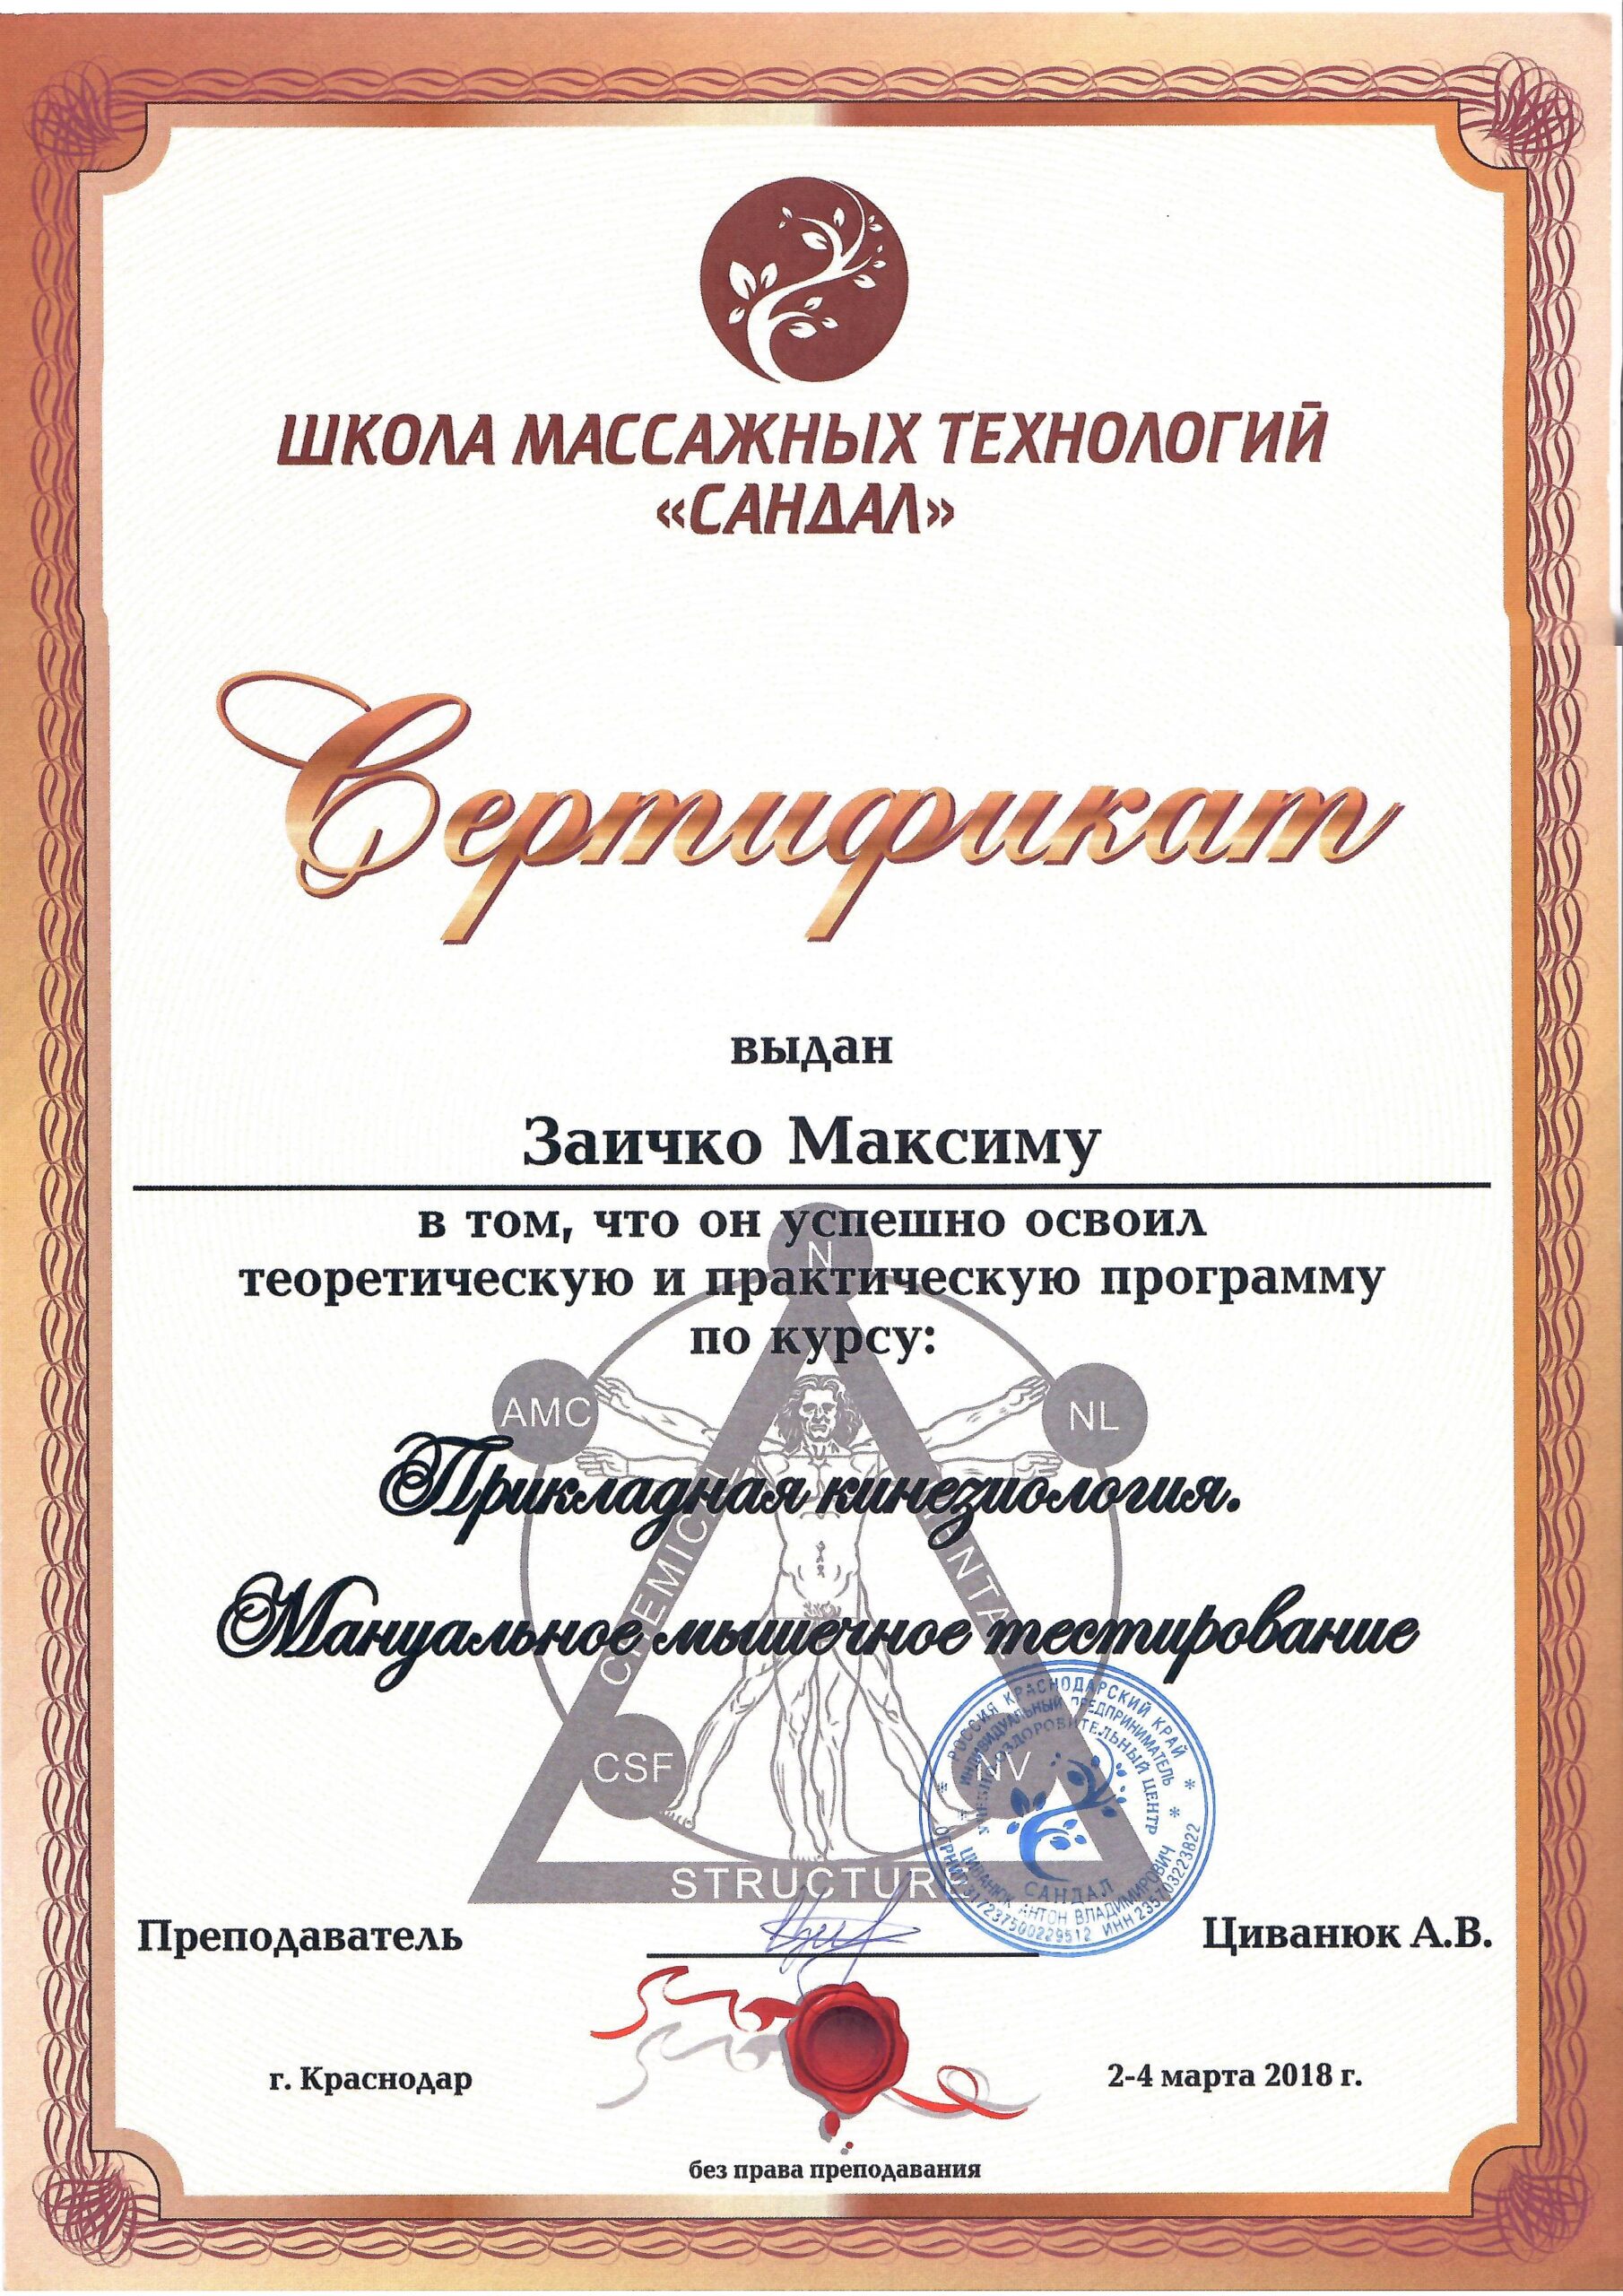 zaichko-maksim-diplomy-i-sertifikaty-19